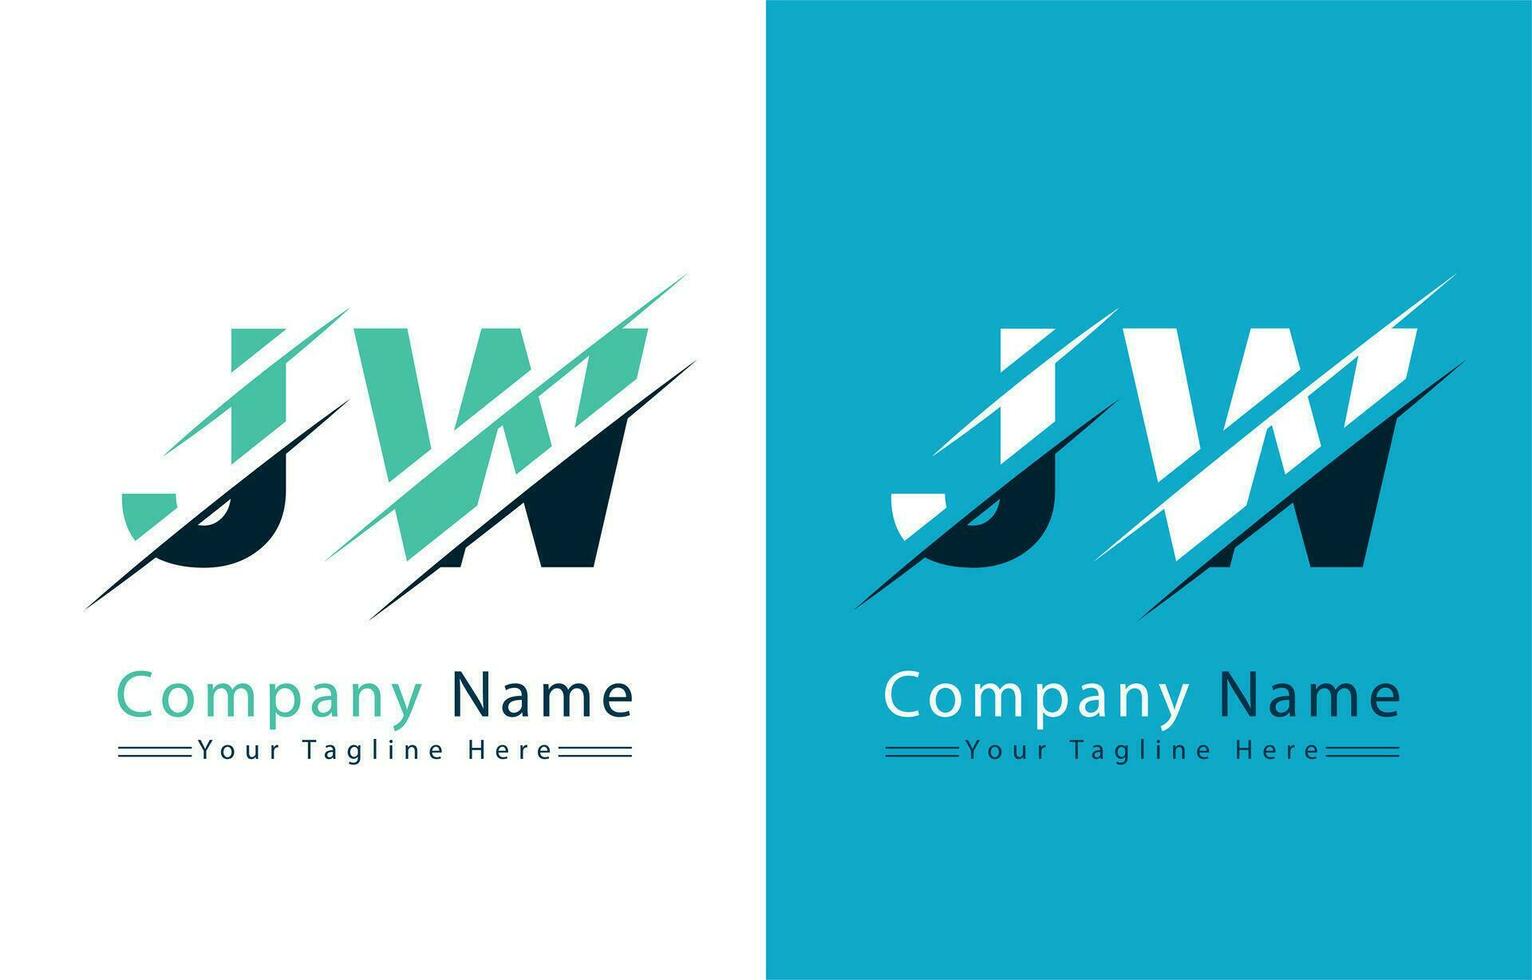 jw letra logo diseño modelo. vector logo ilustración